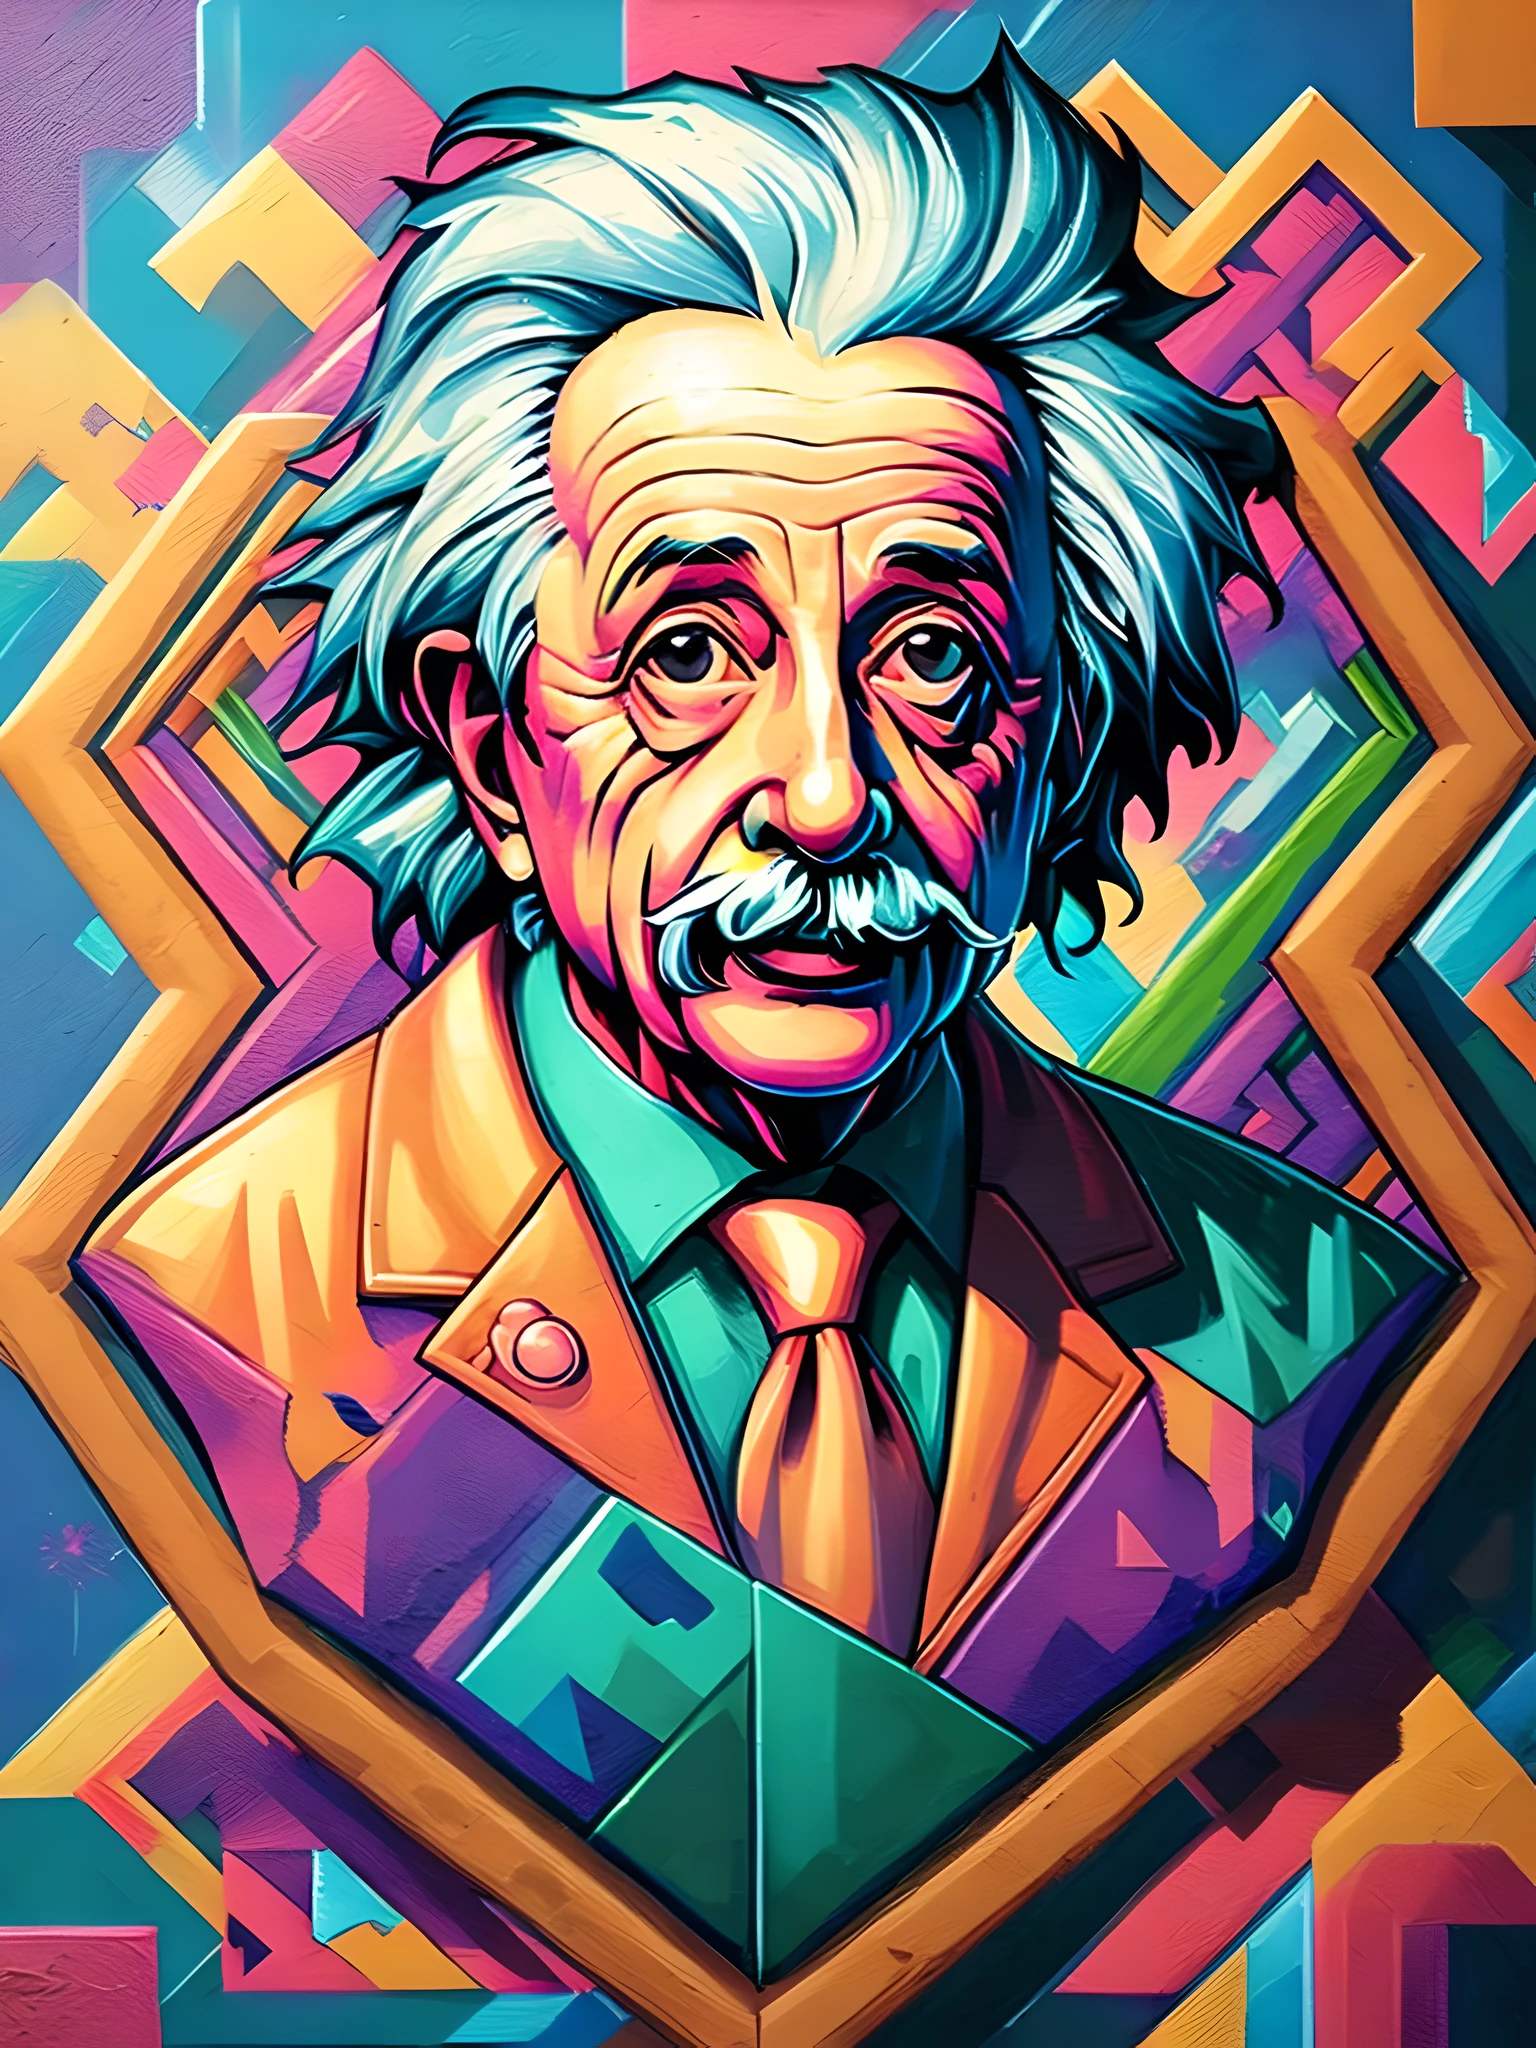 (meilleure qualité),(chef-d&#39;œuvre),(ultra détaillé),(très détaillé),(extrêmement détaillé),centré, Isométrique, mural, graffiti, Composition, formes, motifs, art vectoriel prêt à imprimer une illustration graffiti très détaillée d&#39;Einstein